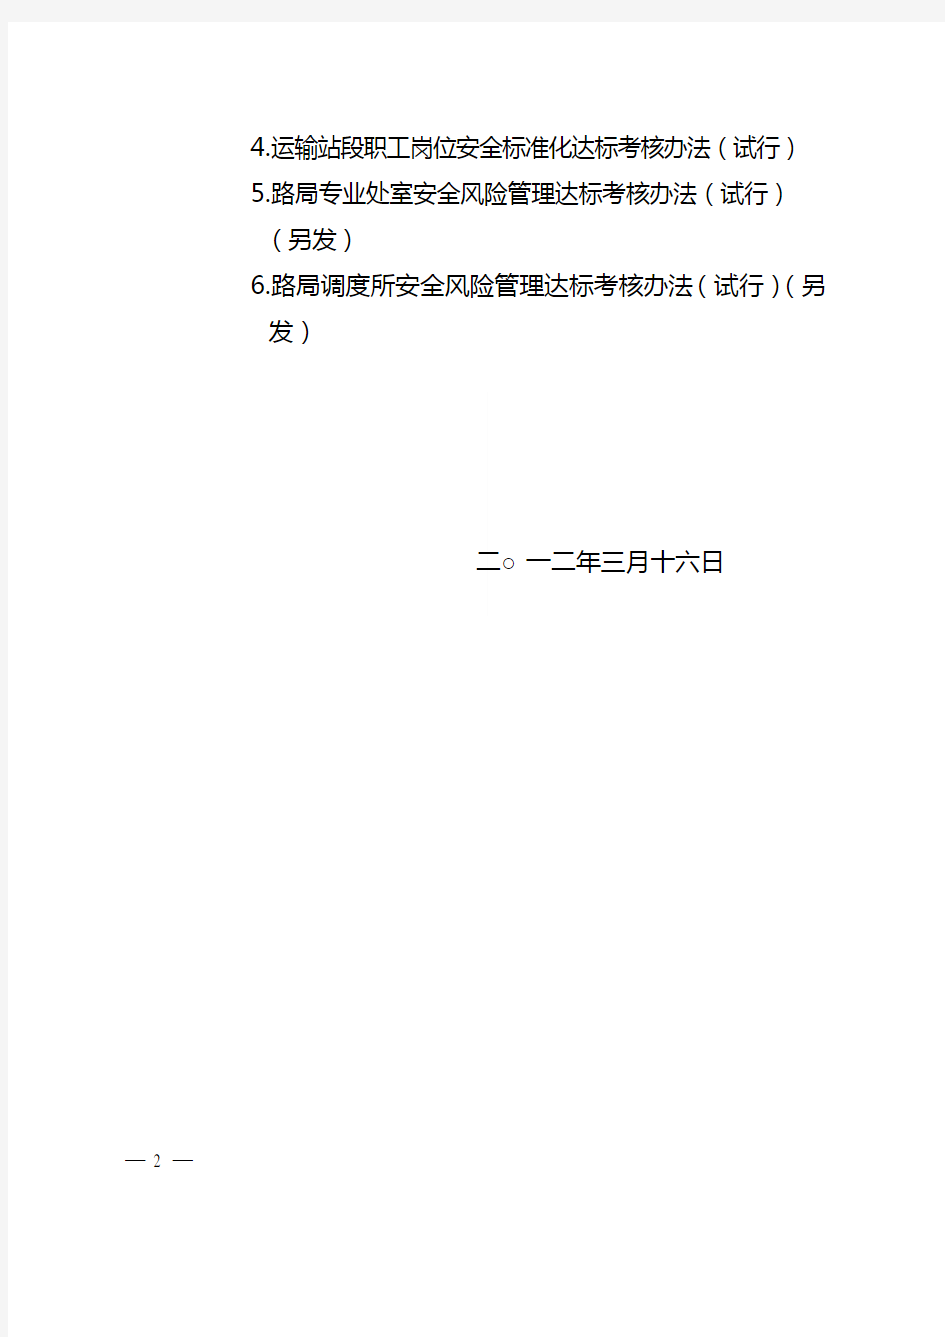 北京铁路局安全风险管理实施意见(京铁办[2012]131号)